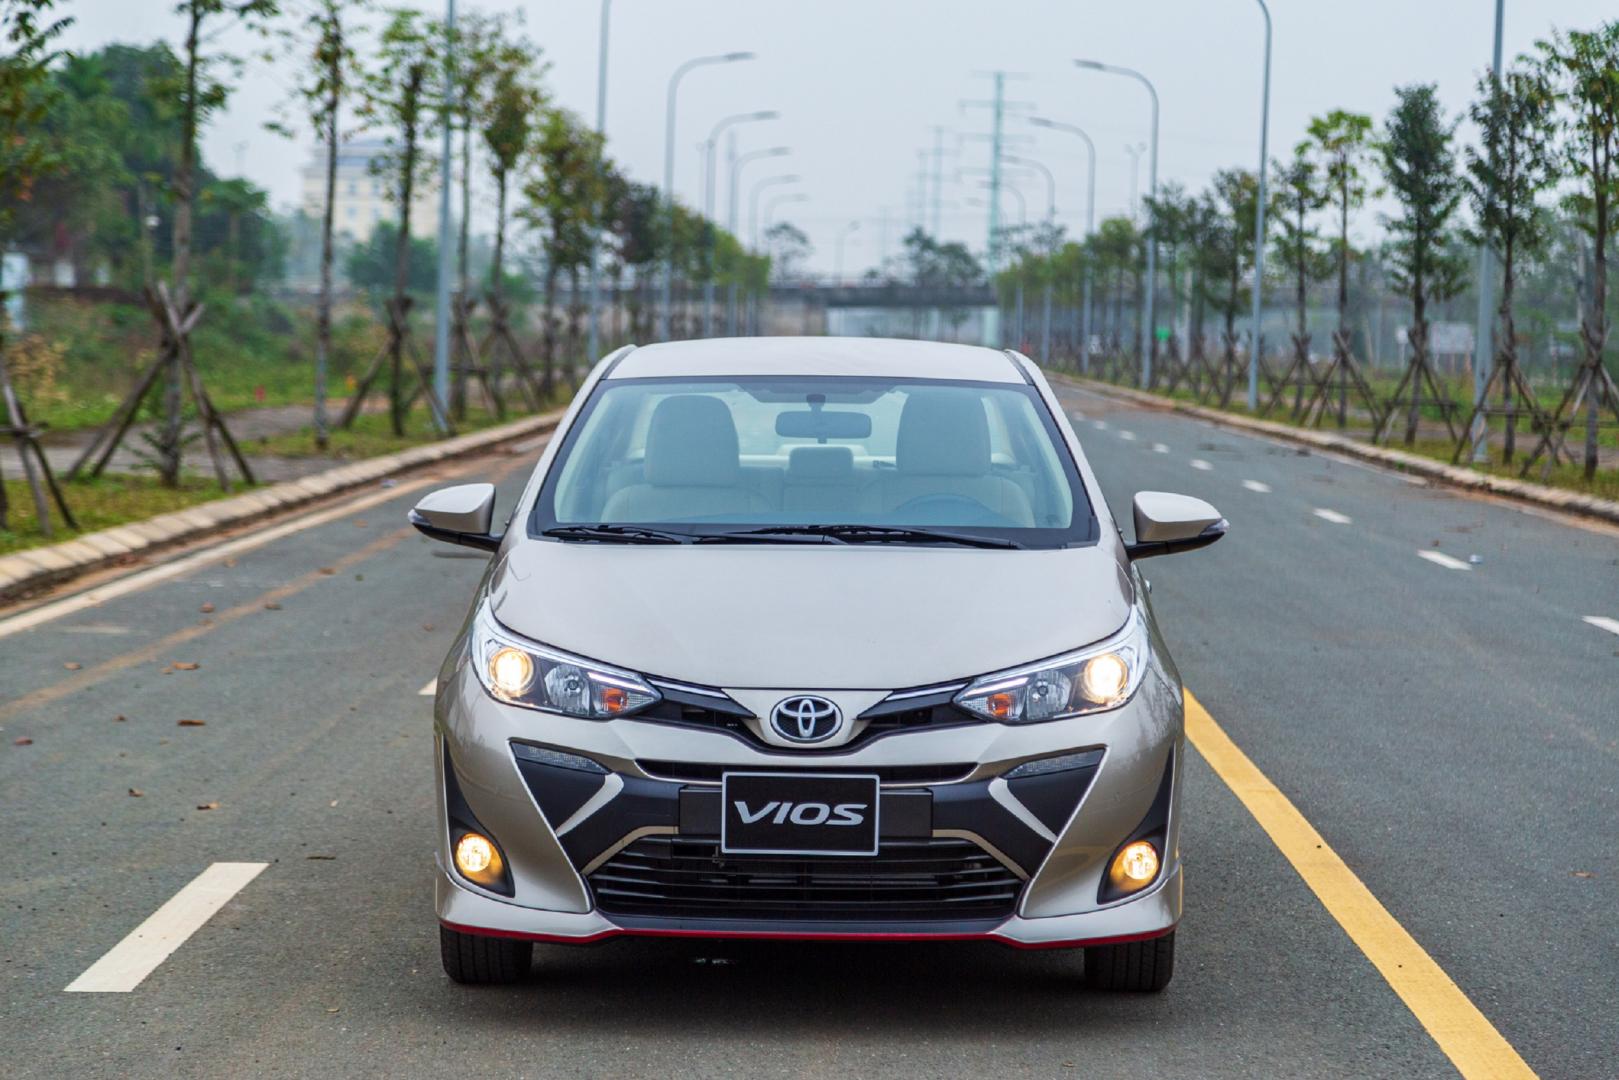 Toyota Việt Nam lập kỷ lục doanh số cao nhất từ trước tới nay với hơn 9.600 xe bán ra trong tháng 11